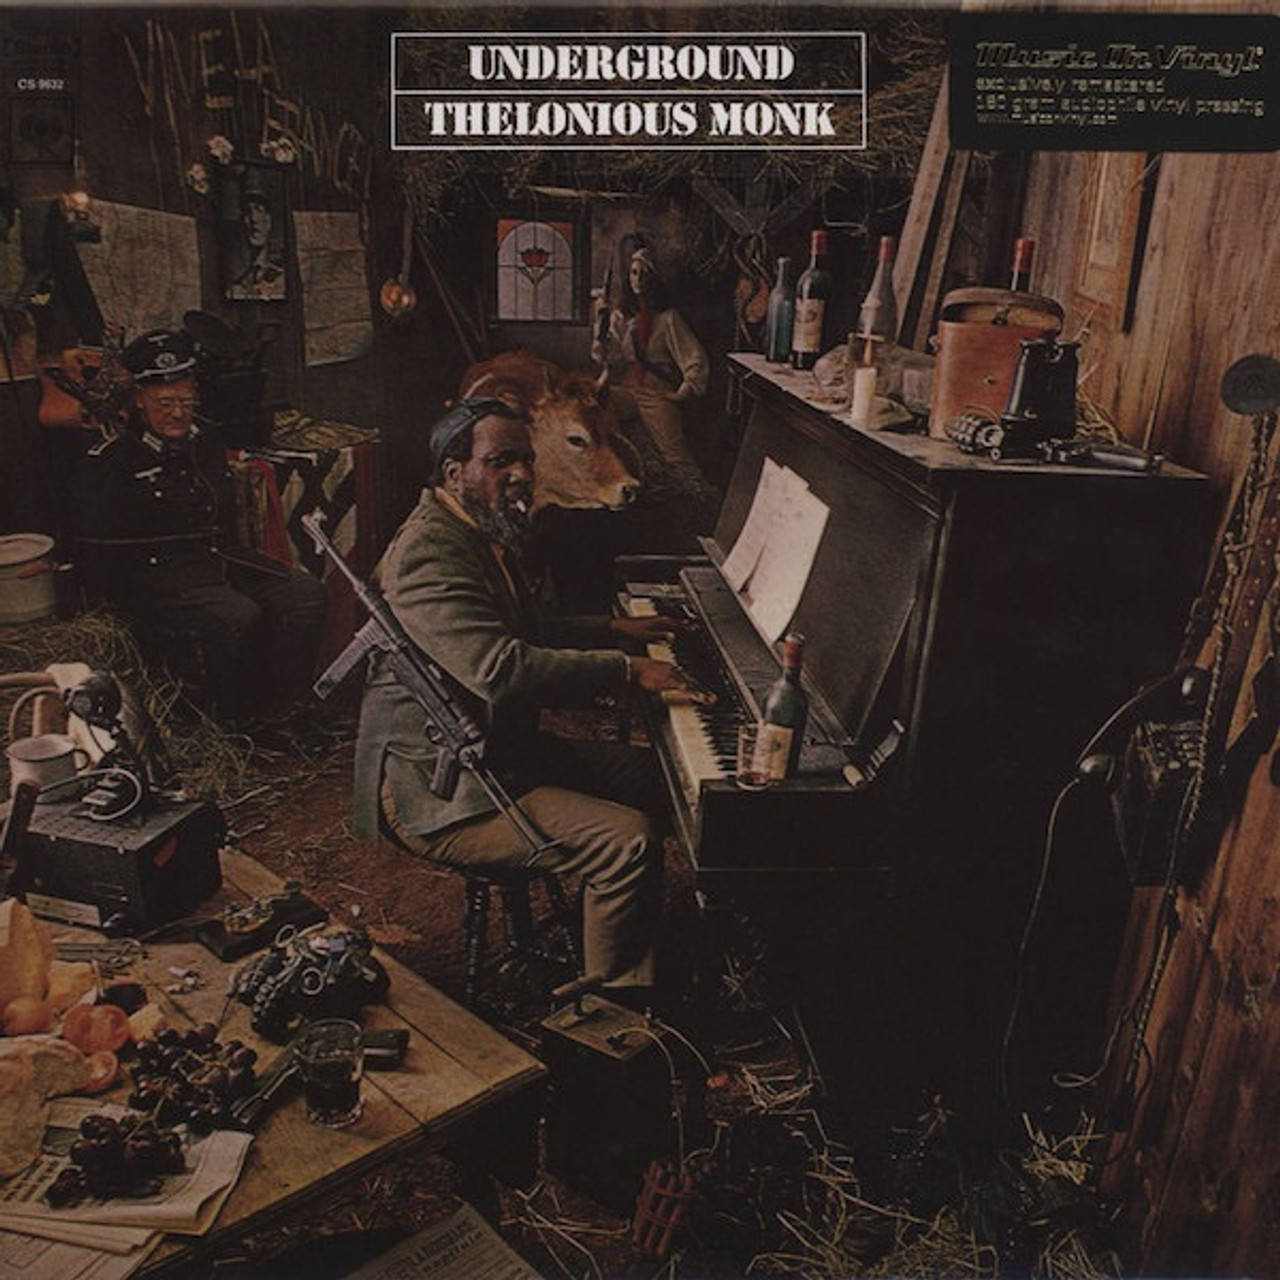 Theloniousmonk Untergrund Musik Album Cover Wallpaper